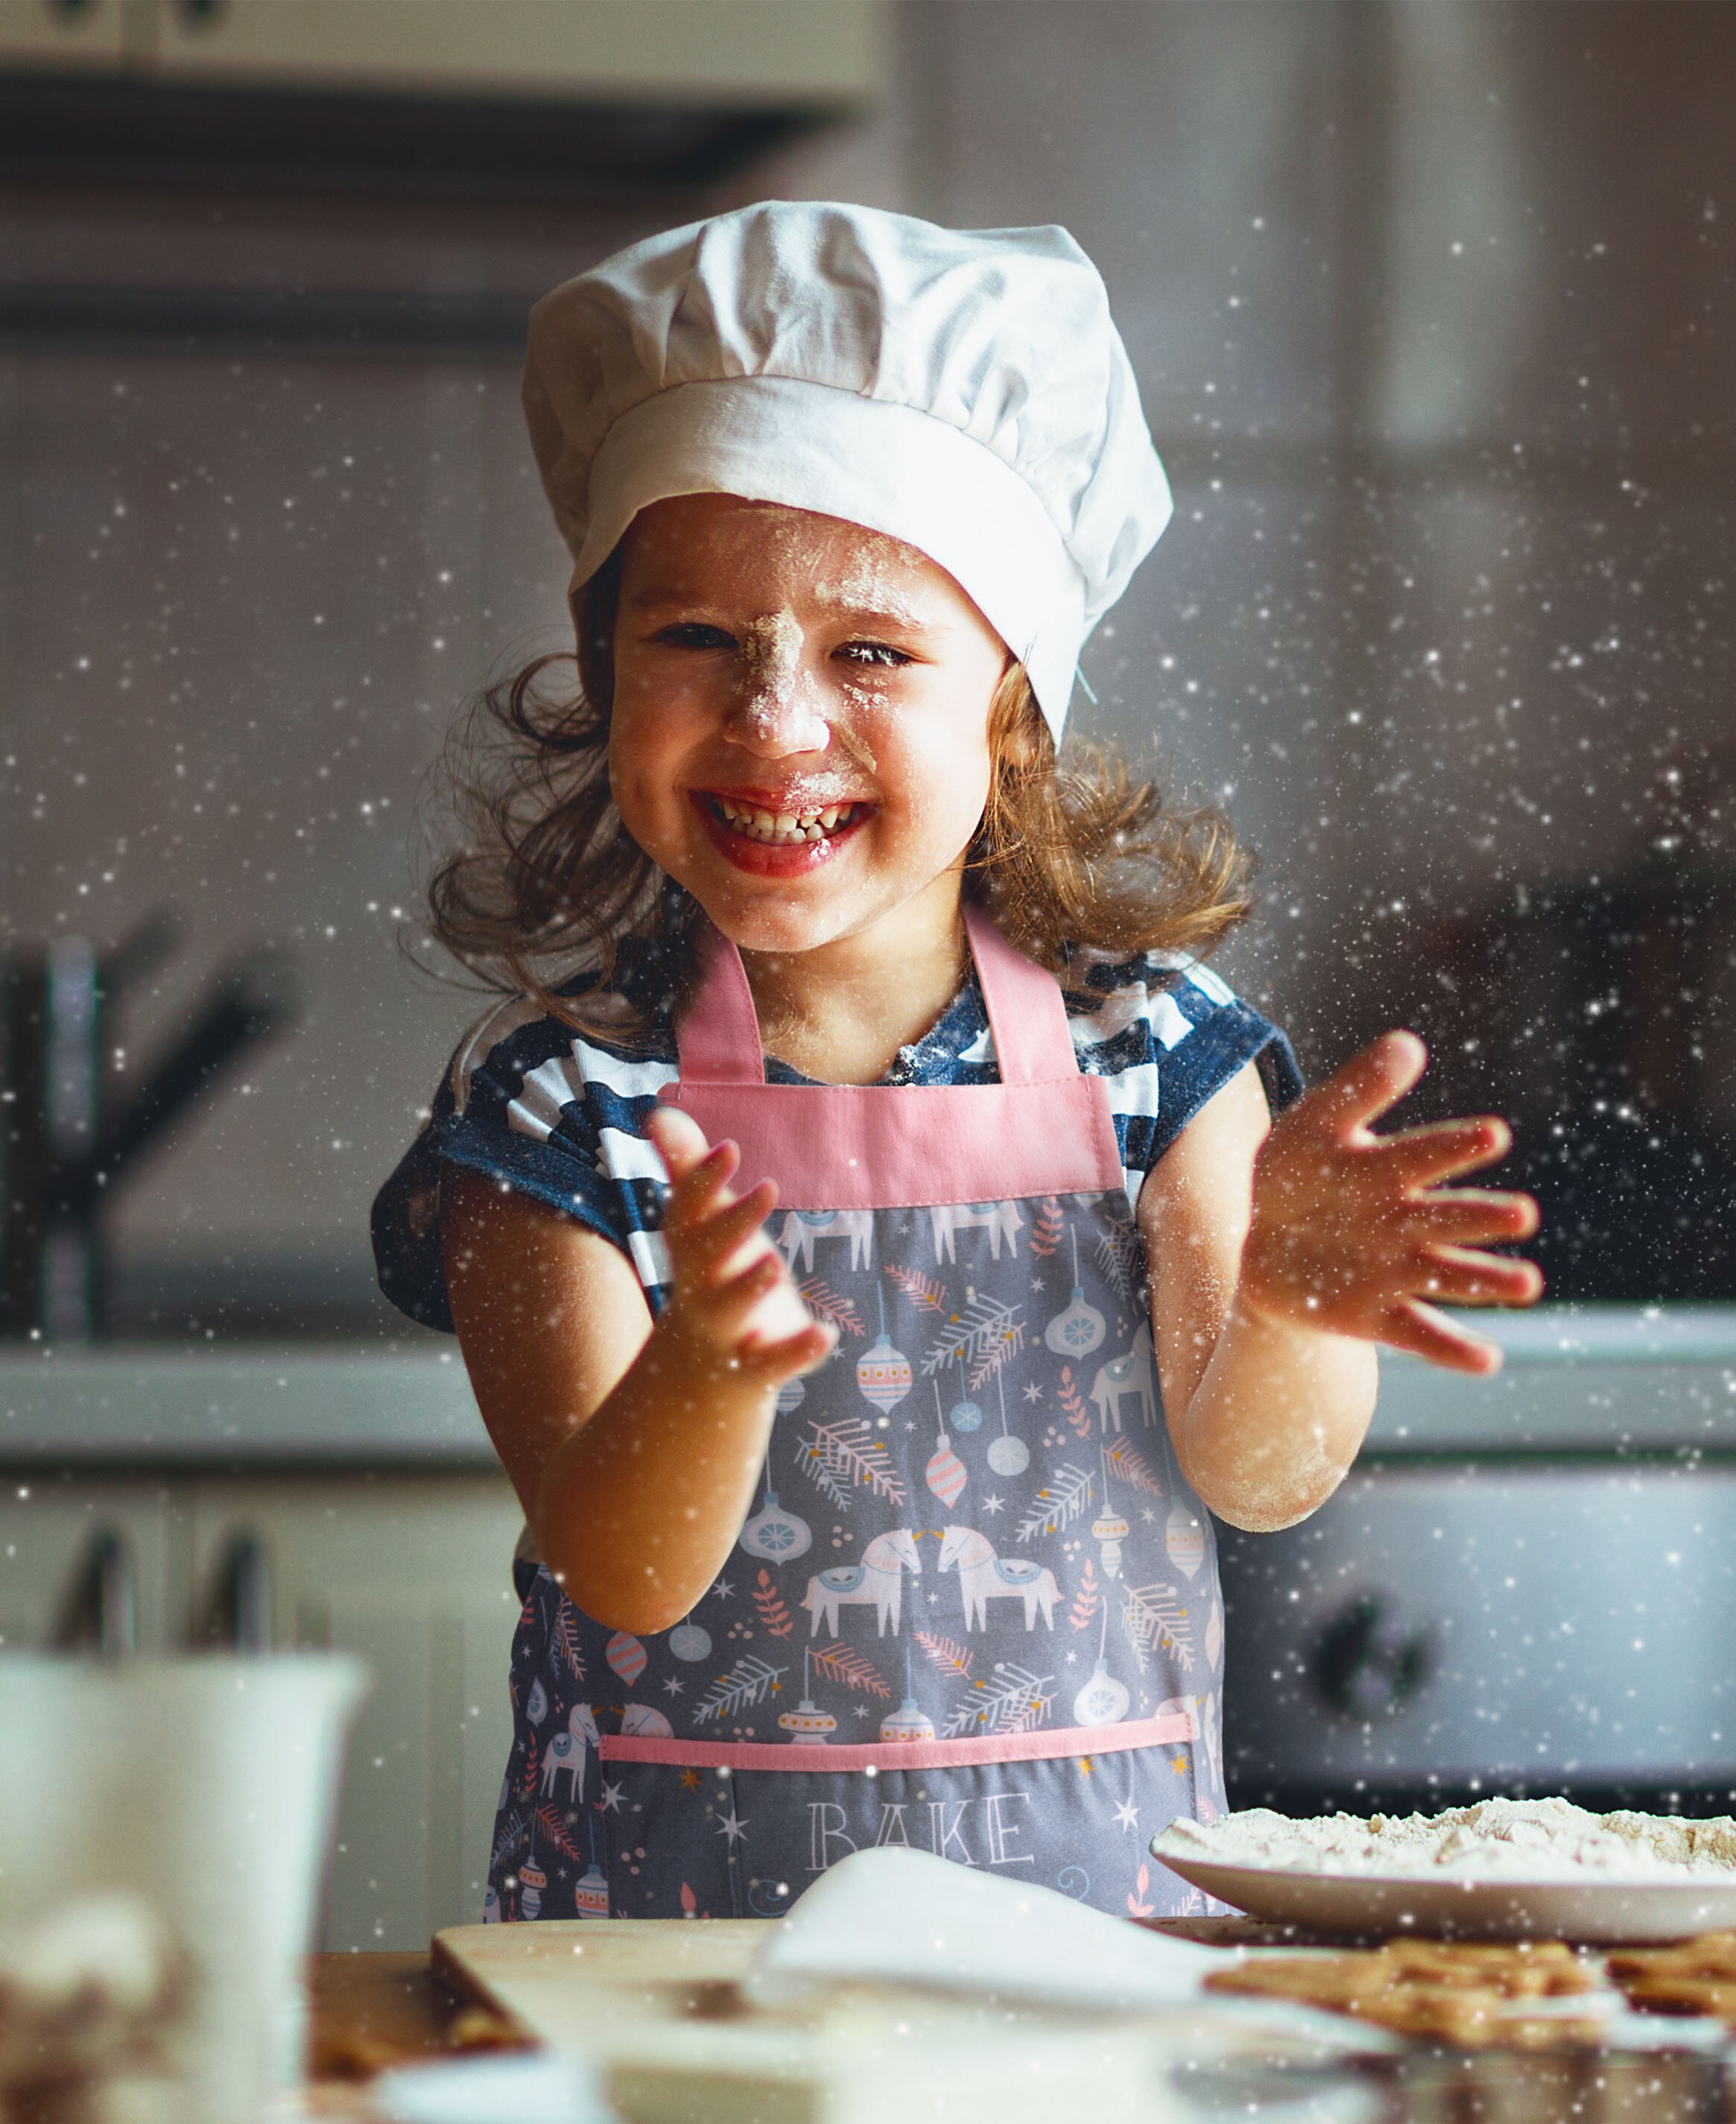 13 Pz Juego de Cocina y Horneado para Niños Delantales para Niños NATUCE Juguetes de Cocina Ropa de Chef Infantil Azul Juego Cocina Regalo 